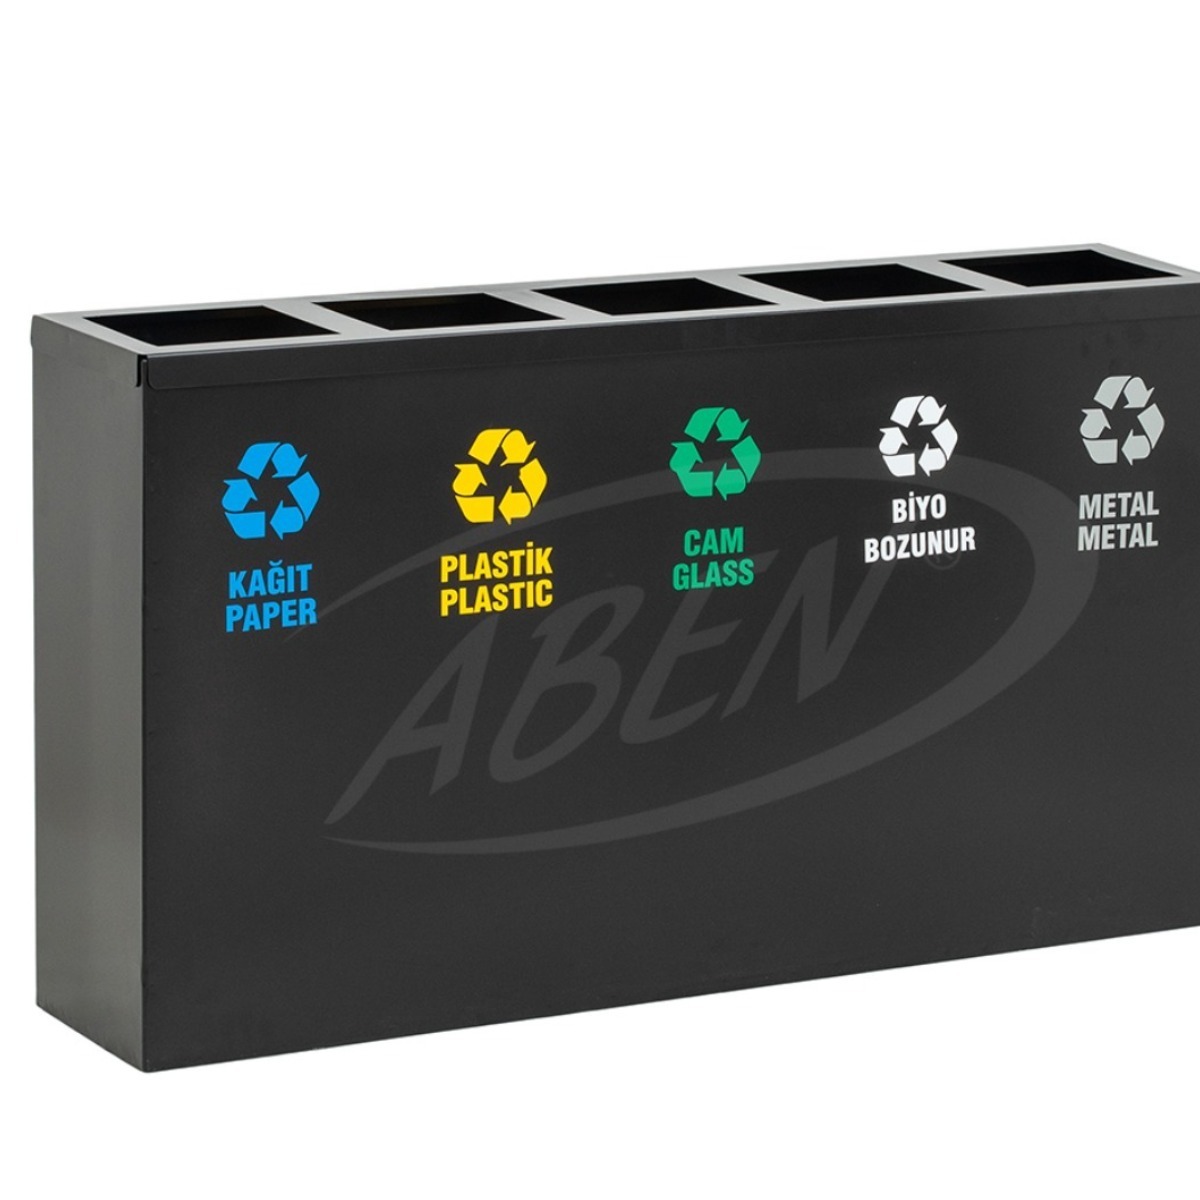 AB-701 5’Part Recycle Bin + Battery Box adlı ürünün logosu